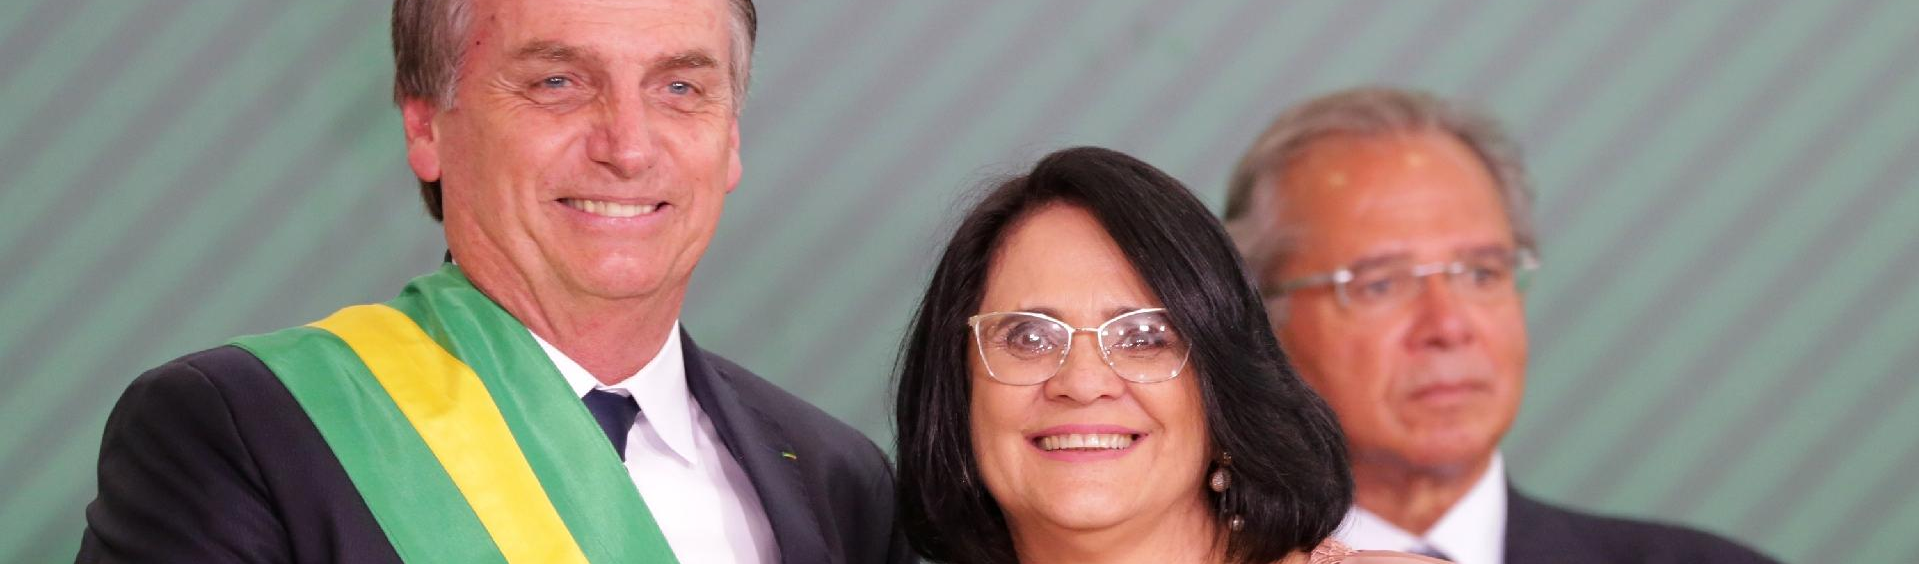 8 de março: Bolsonaro e Damares querem tirar direitos conquistados pelas mulheres